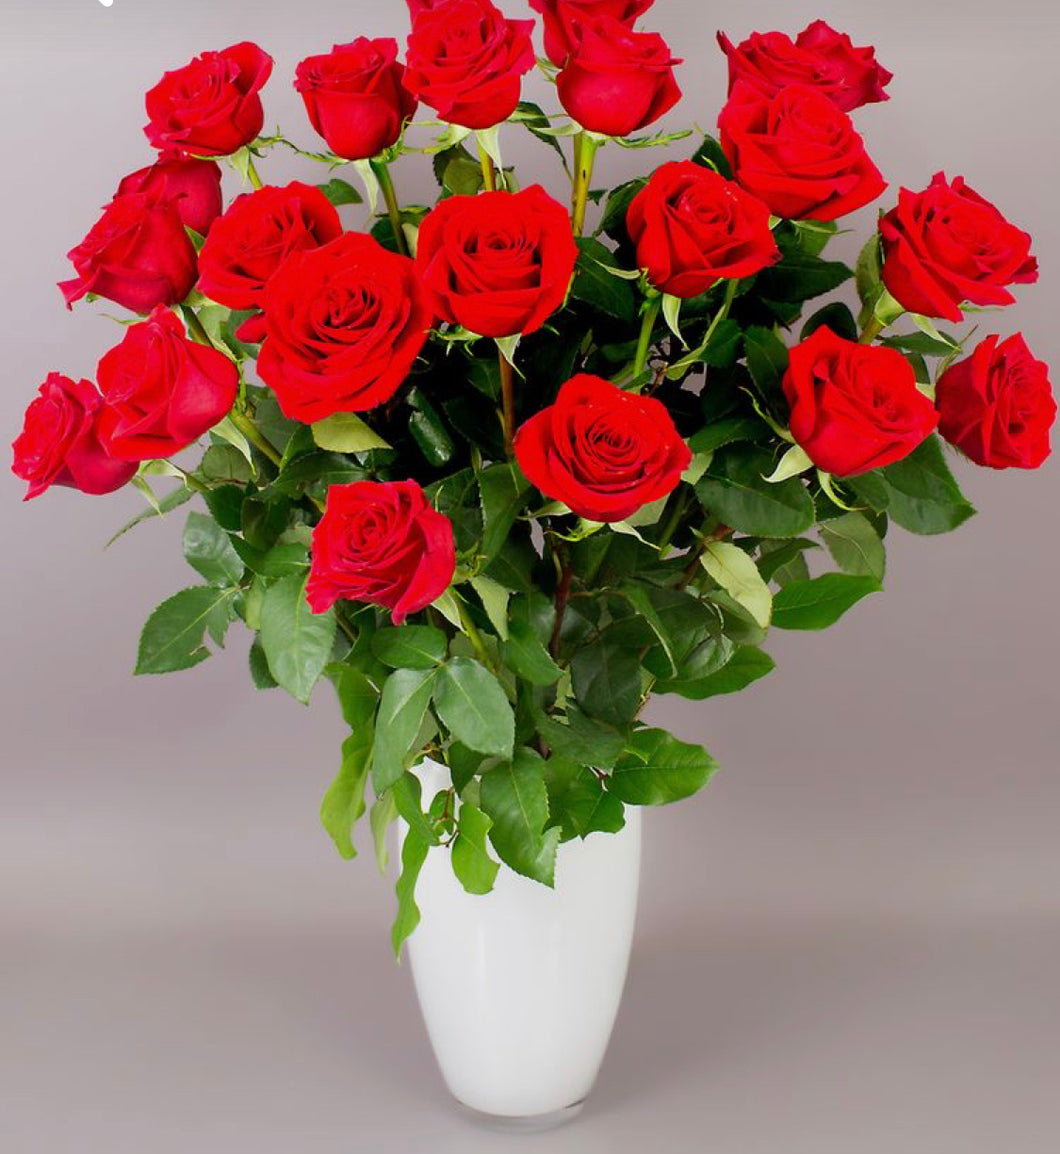 24 Red Roses in White vase.- Best Seller